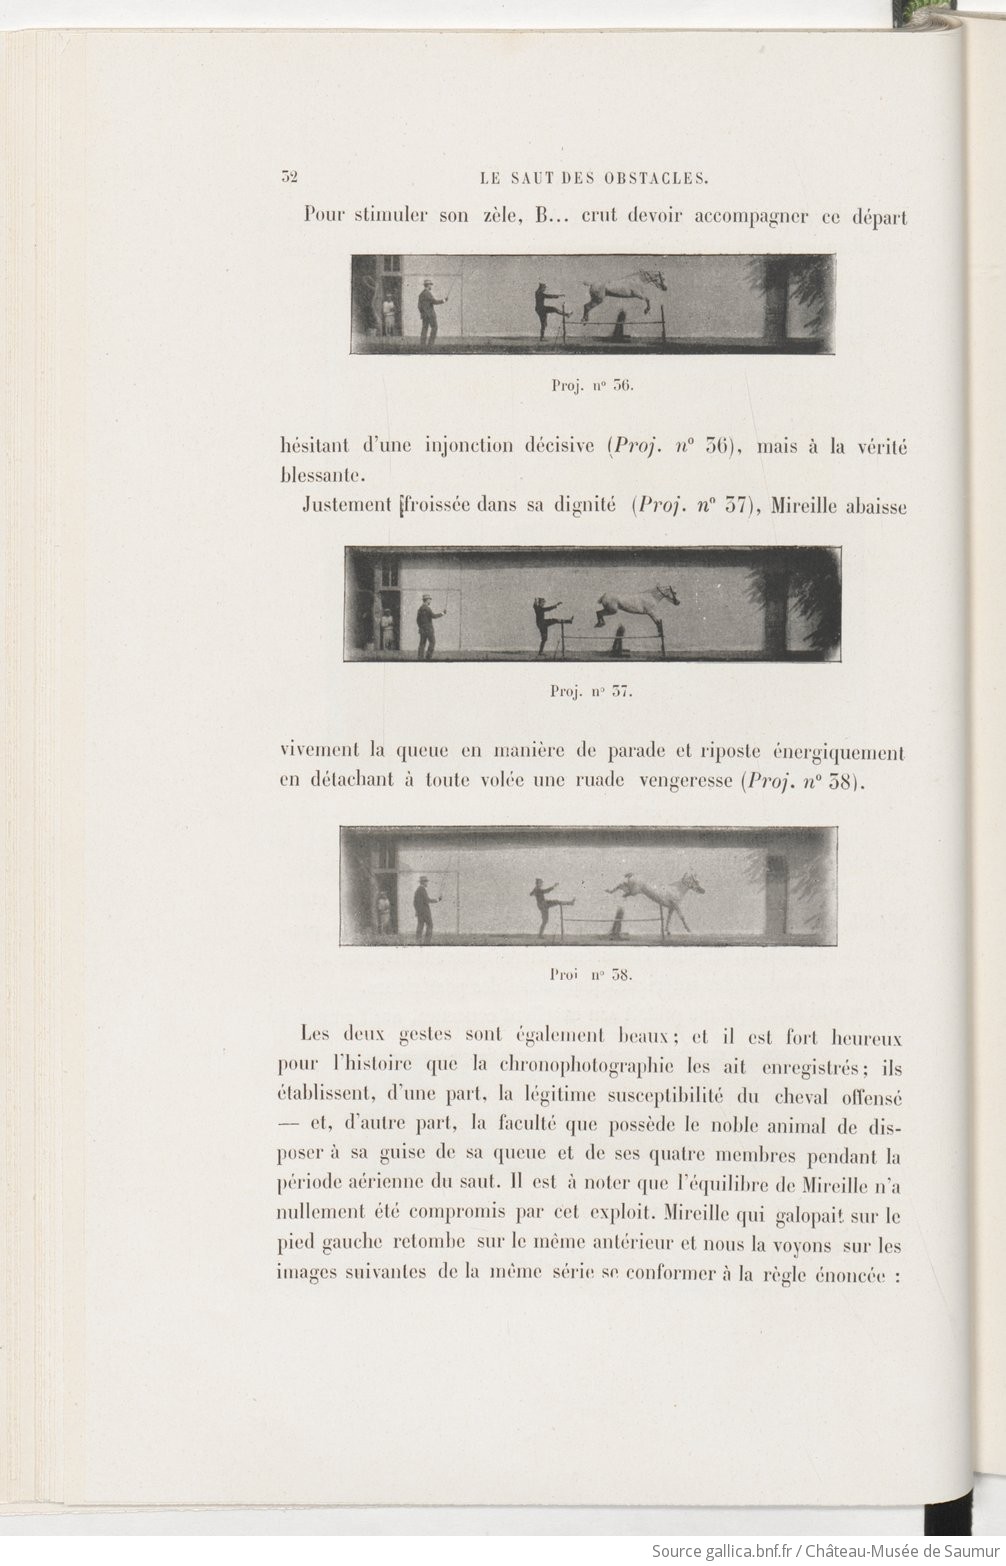 Le Saut des obstacles, recherches, Maxime Guérin-Catelain, 1898